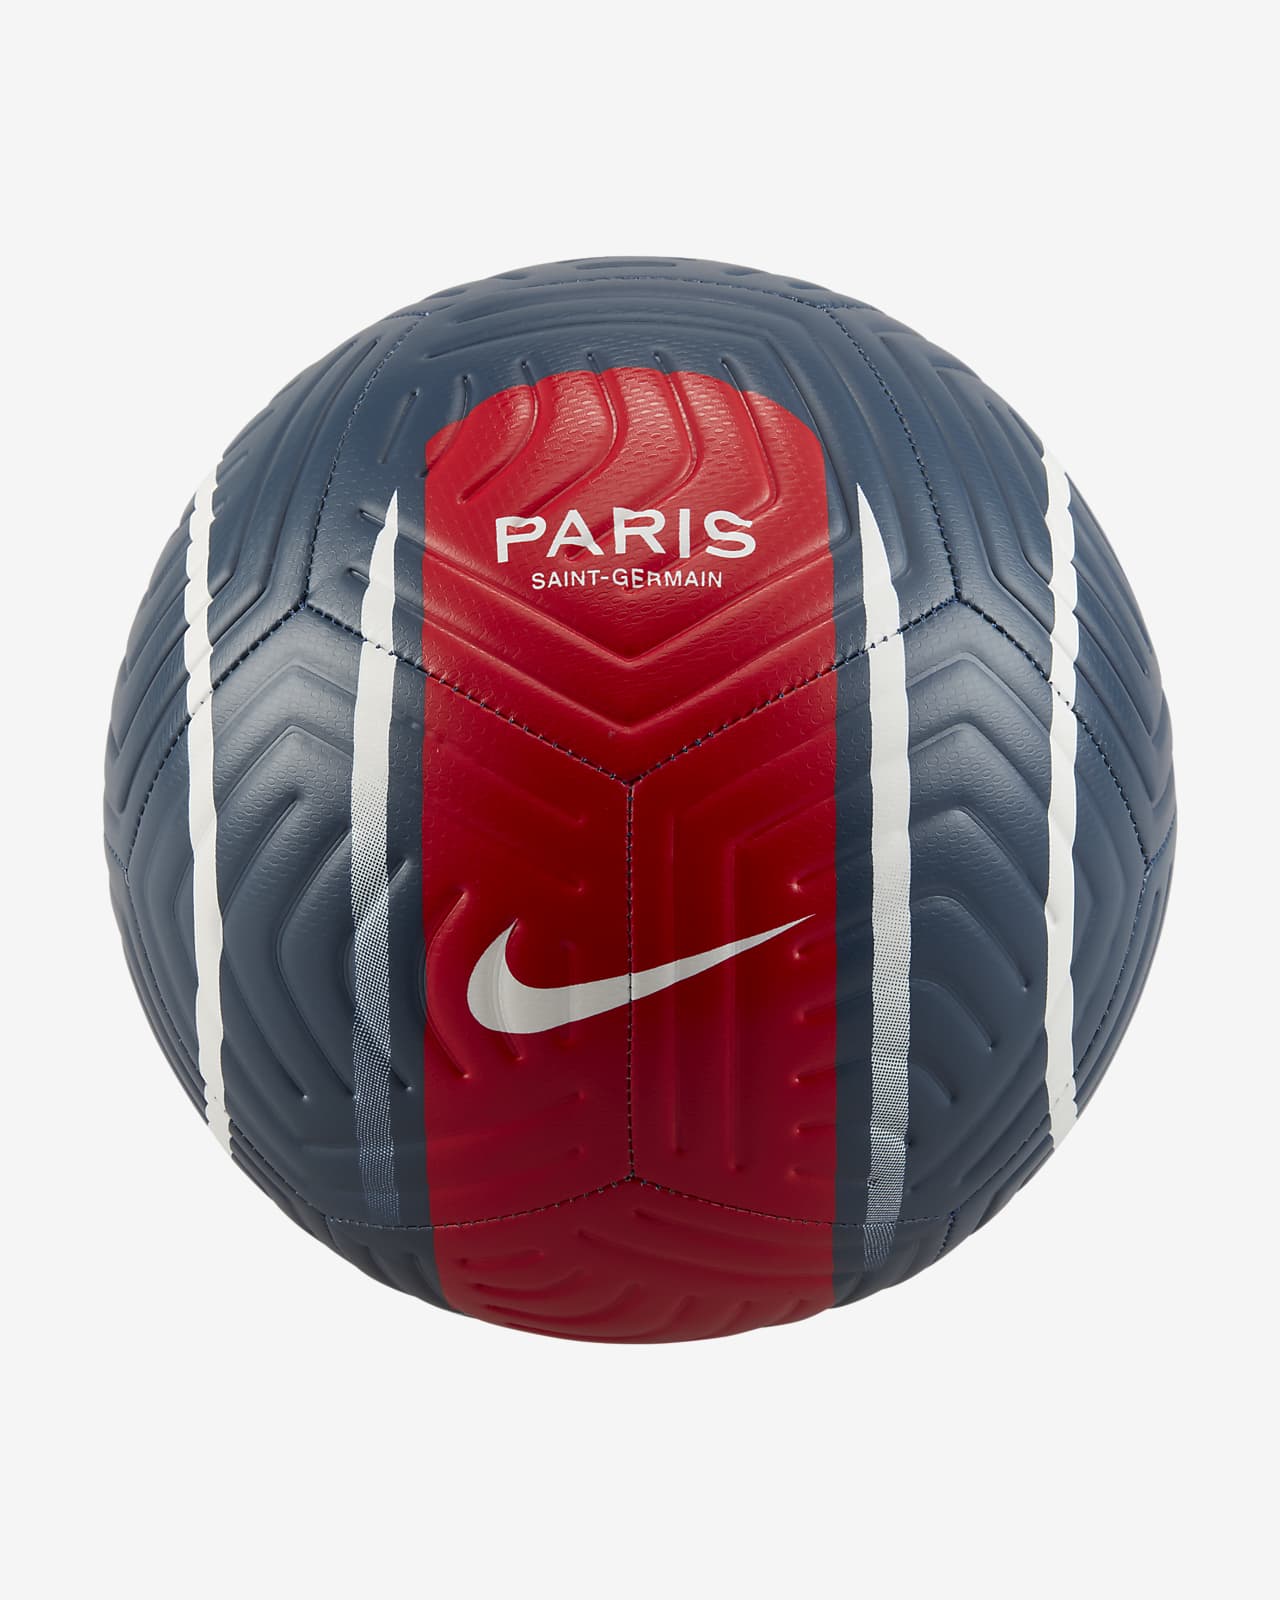 aankunnen Haiku Kan niet lezen of schrijven Paris Saint-Germain Strike Voetbal. Nike NL